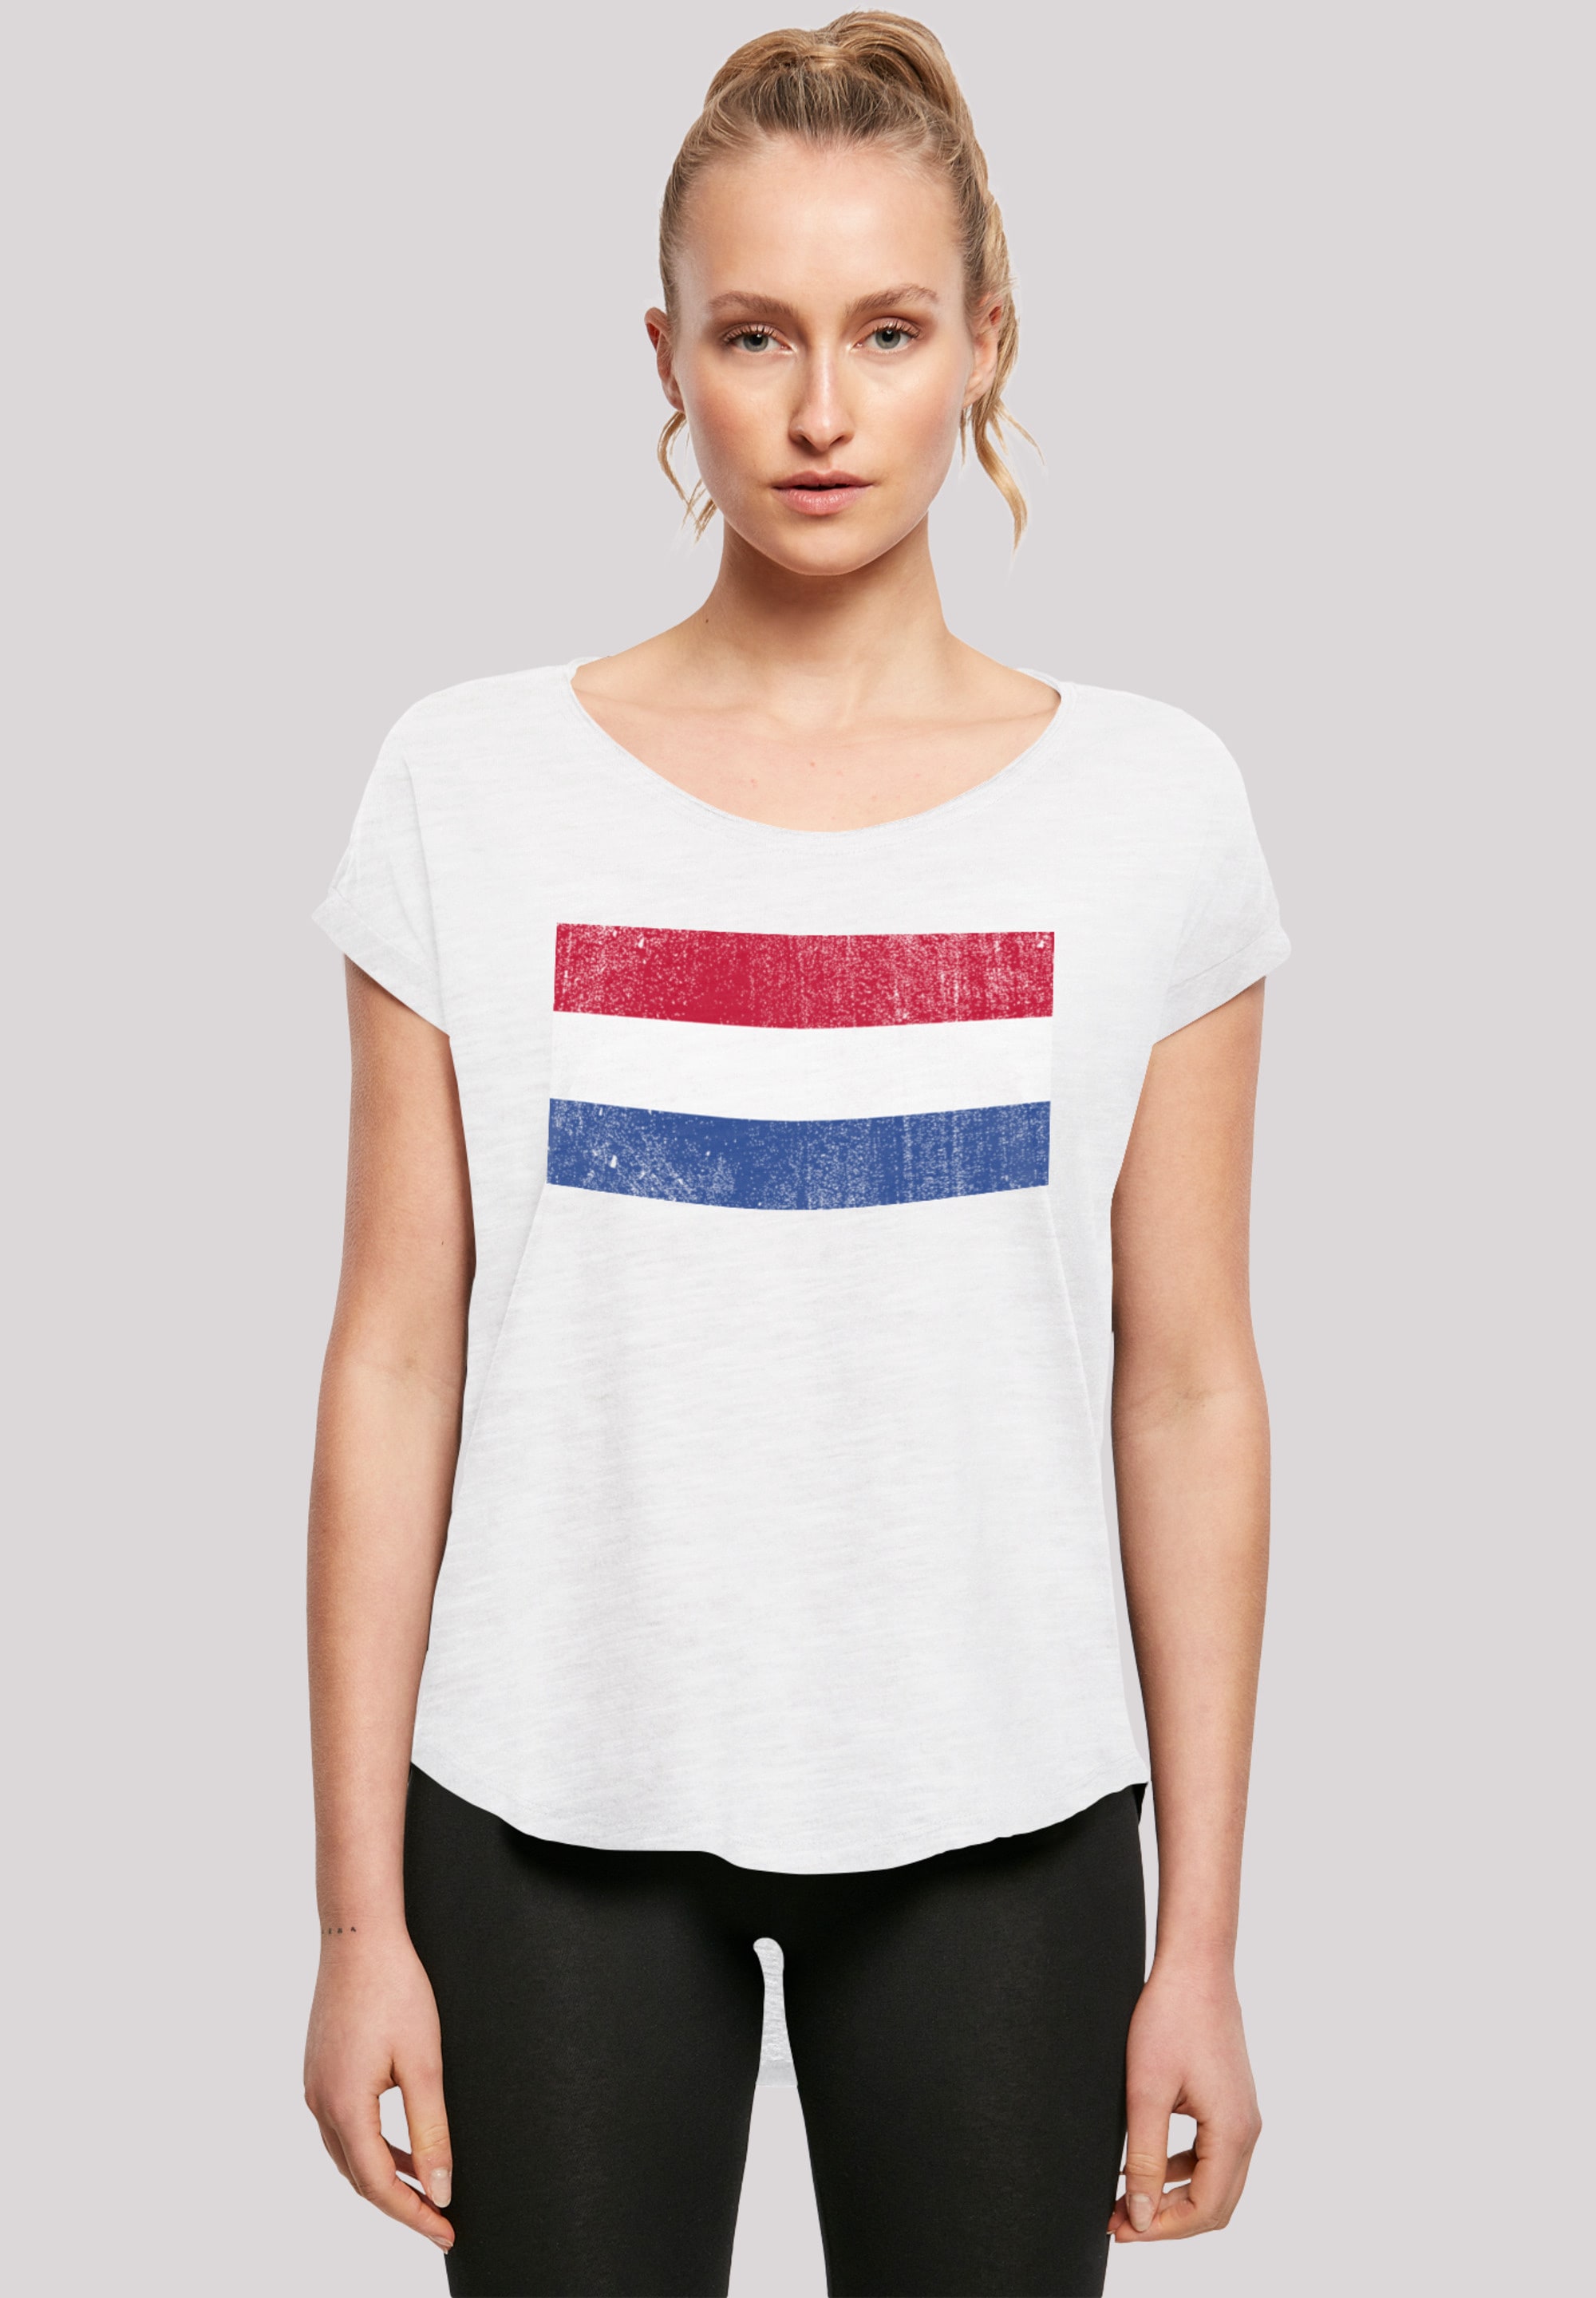 »Netherlands Holland distressed«, NIederlande shoppen Print T-Shirt Flagge F4NT4STIC